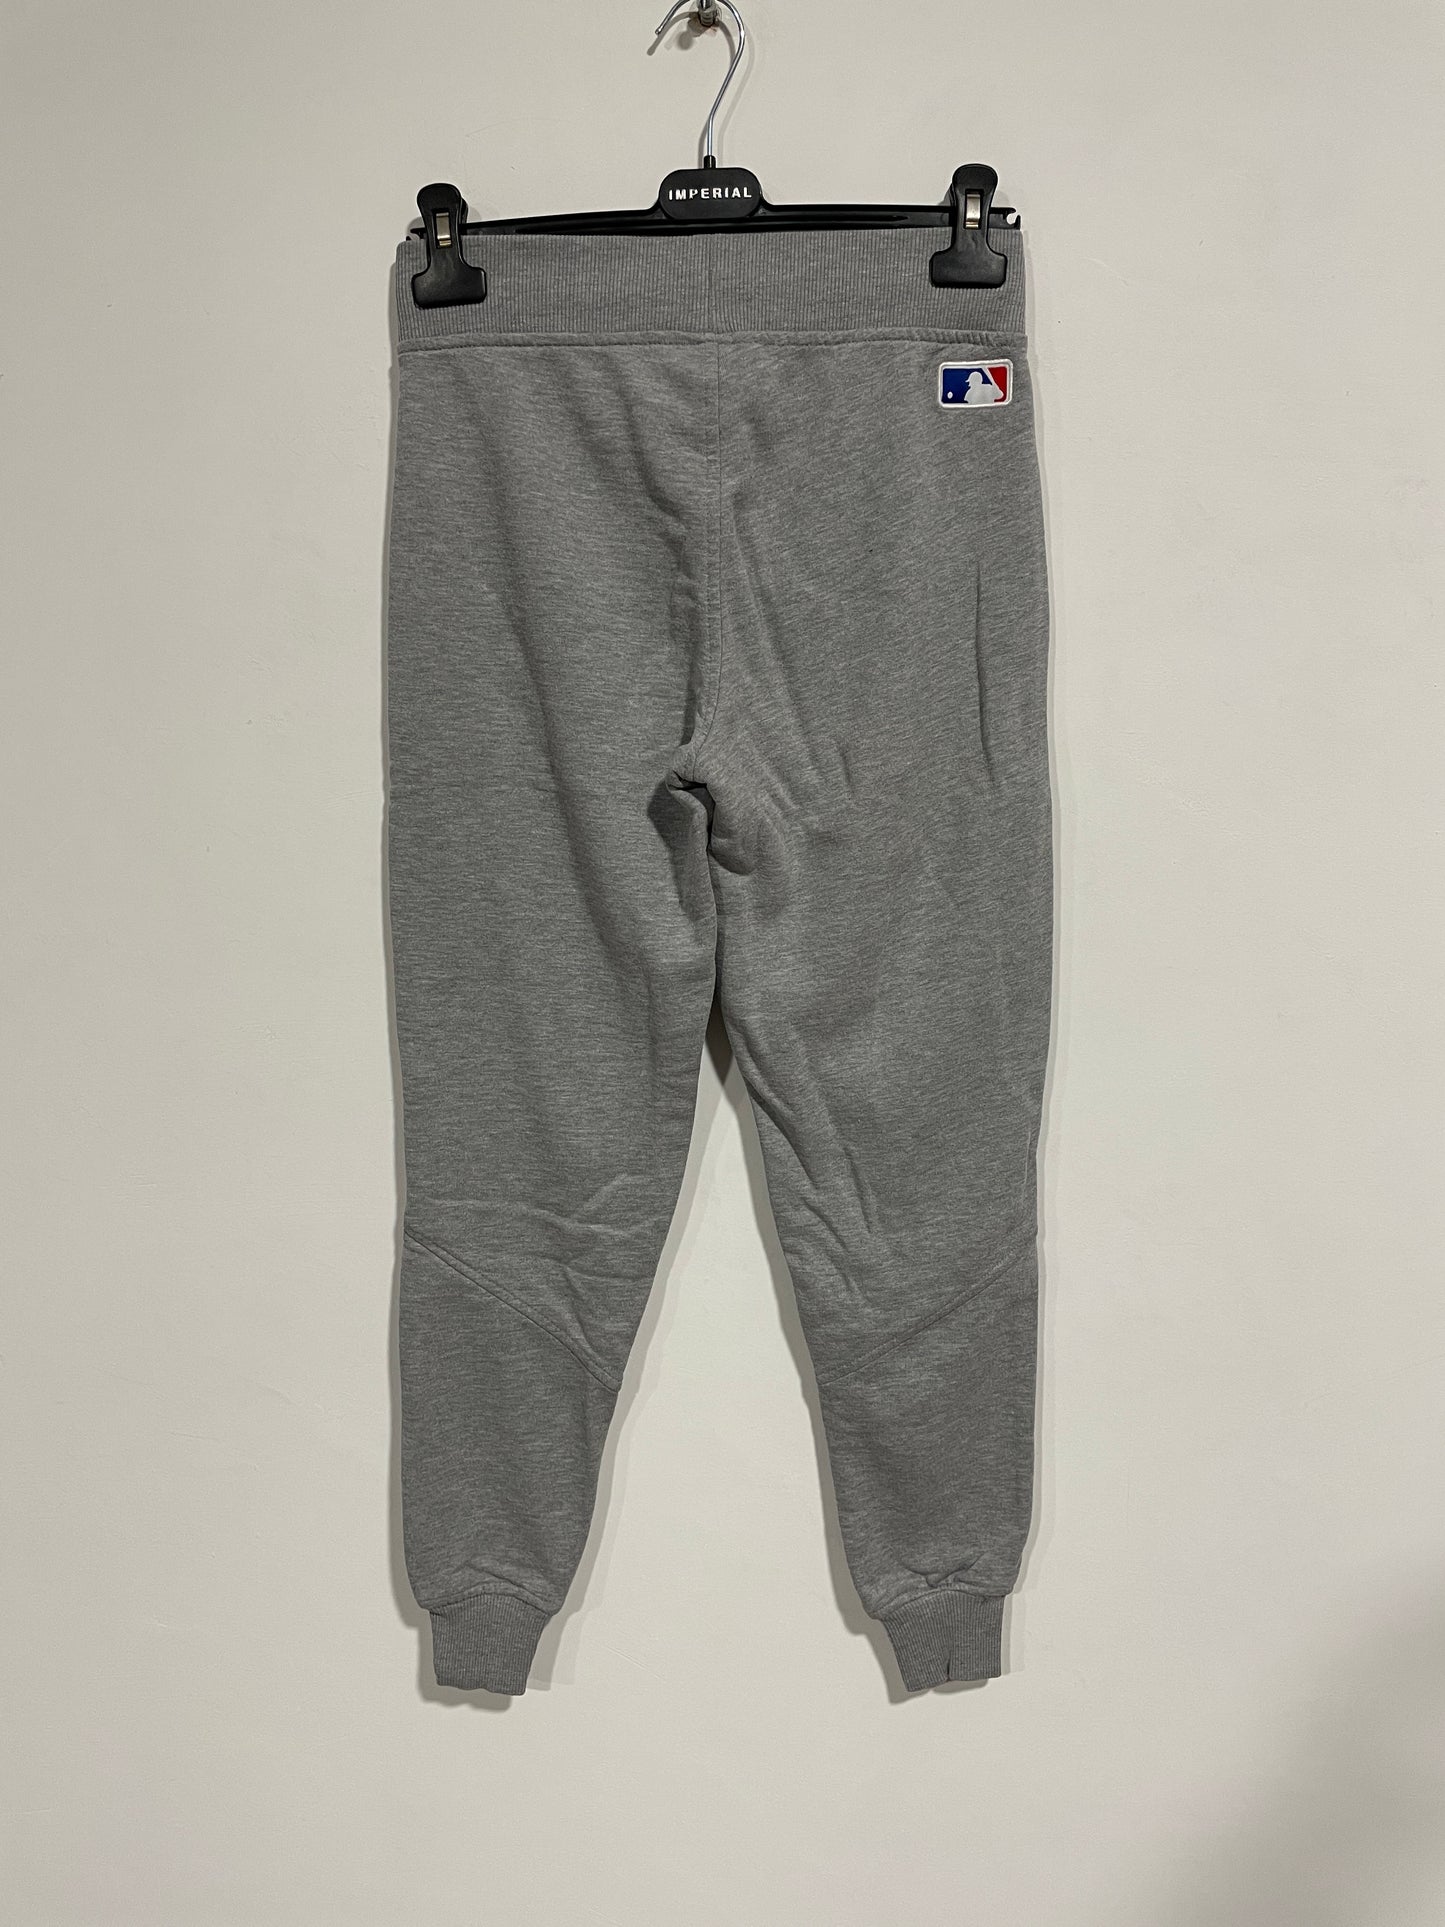 Pantalone tuta New Era Yankees (B026)